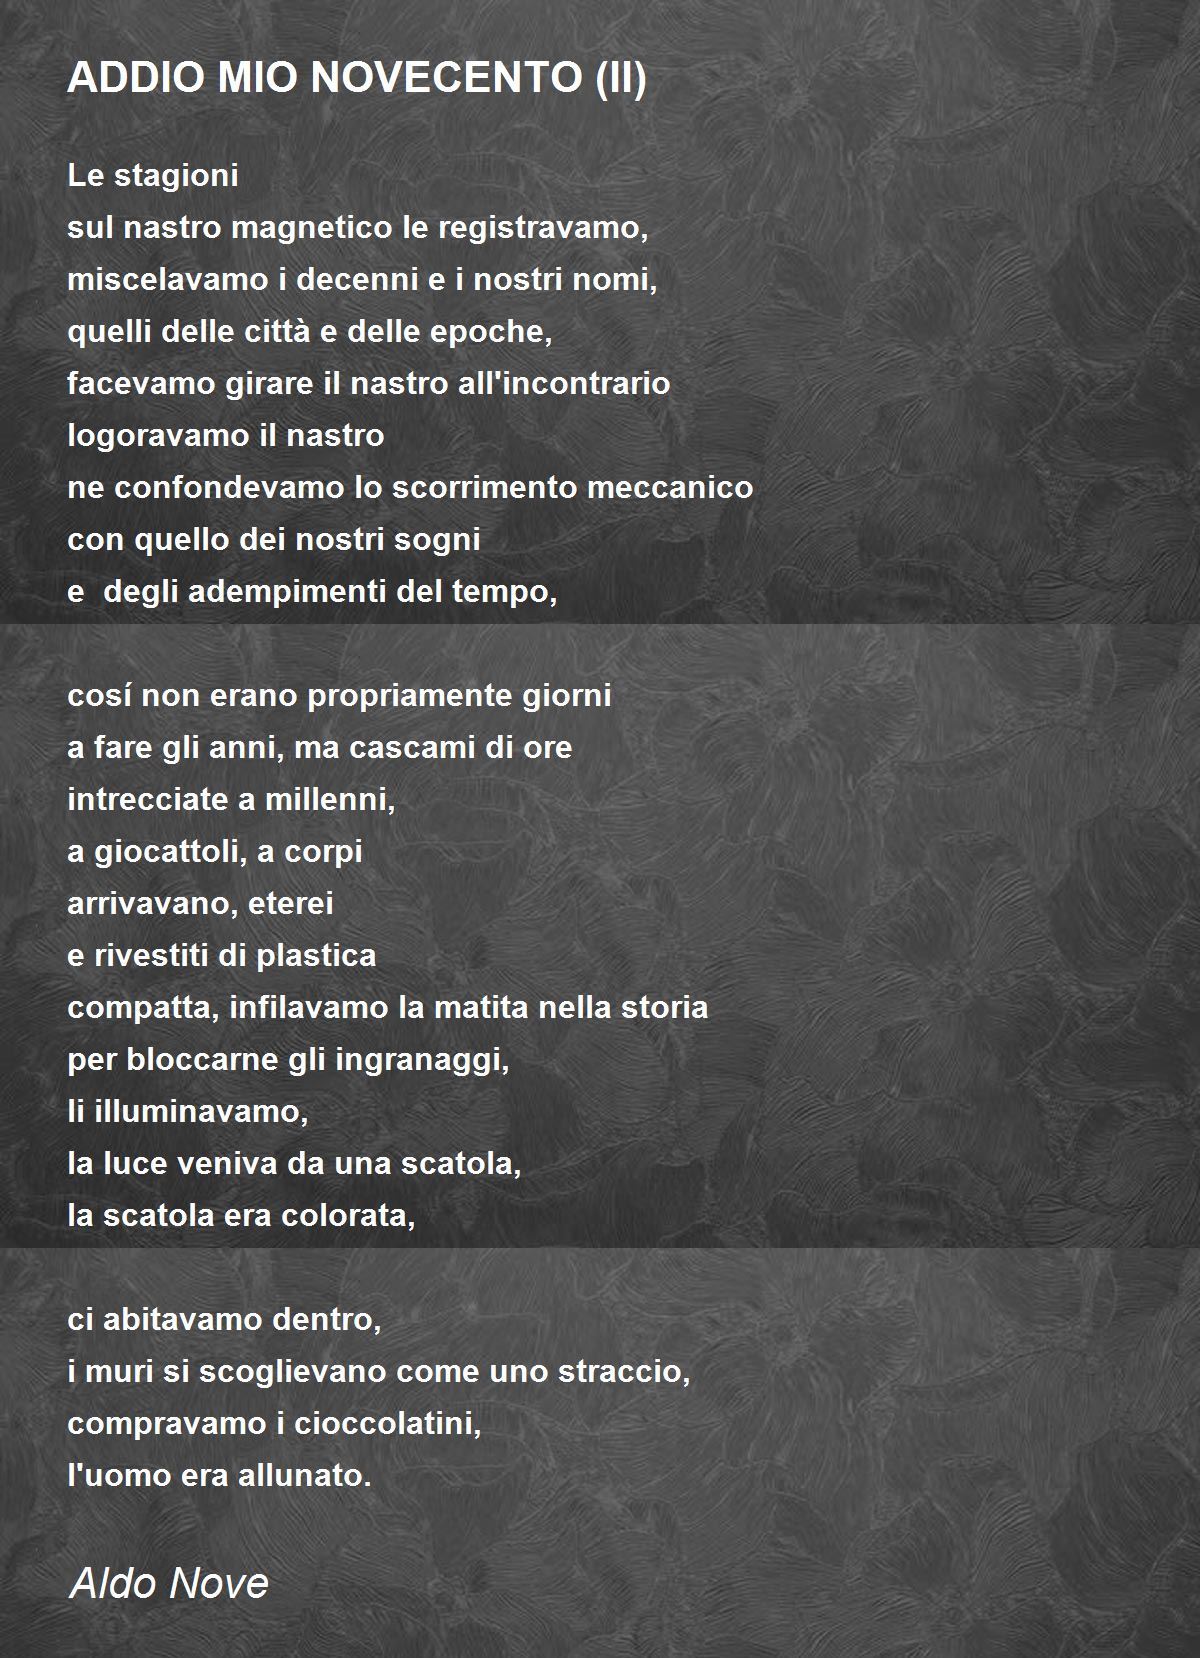 ADDIO MIO NOVECENTO (II) - ADDIO MIO NOVECENTO (II) Poem by Aldo Nove